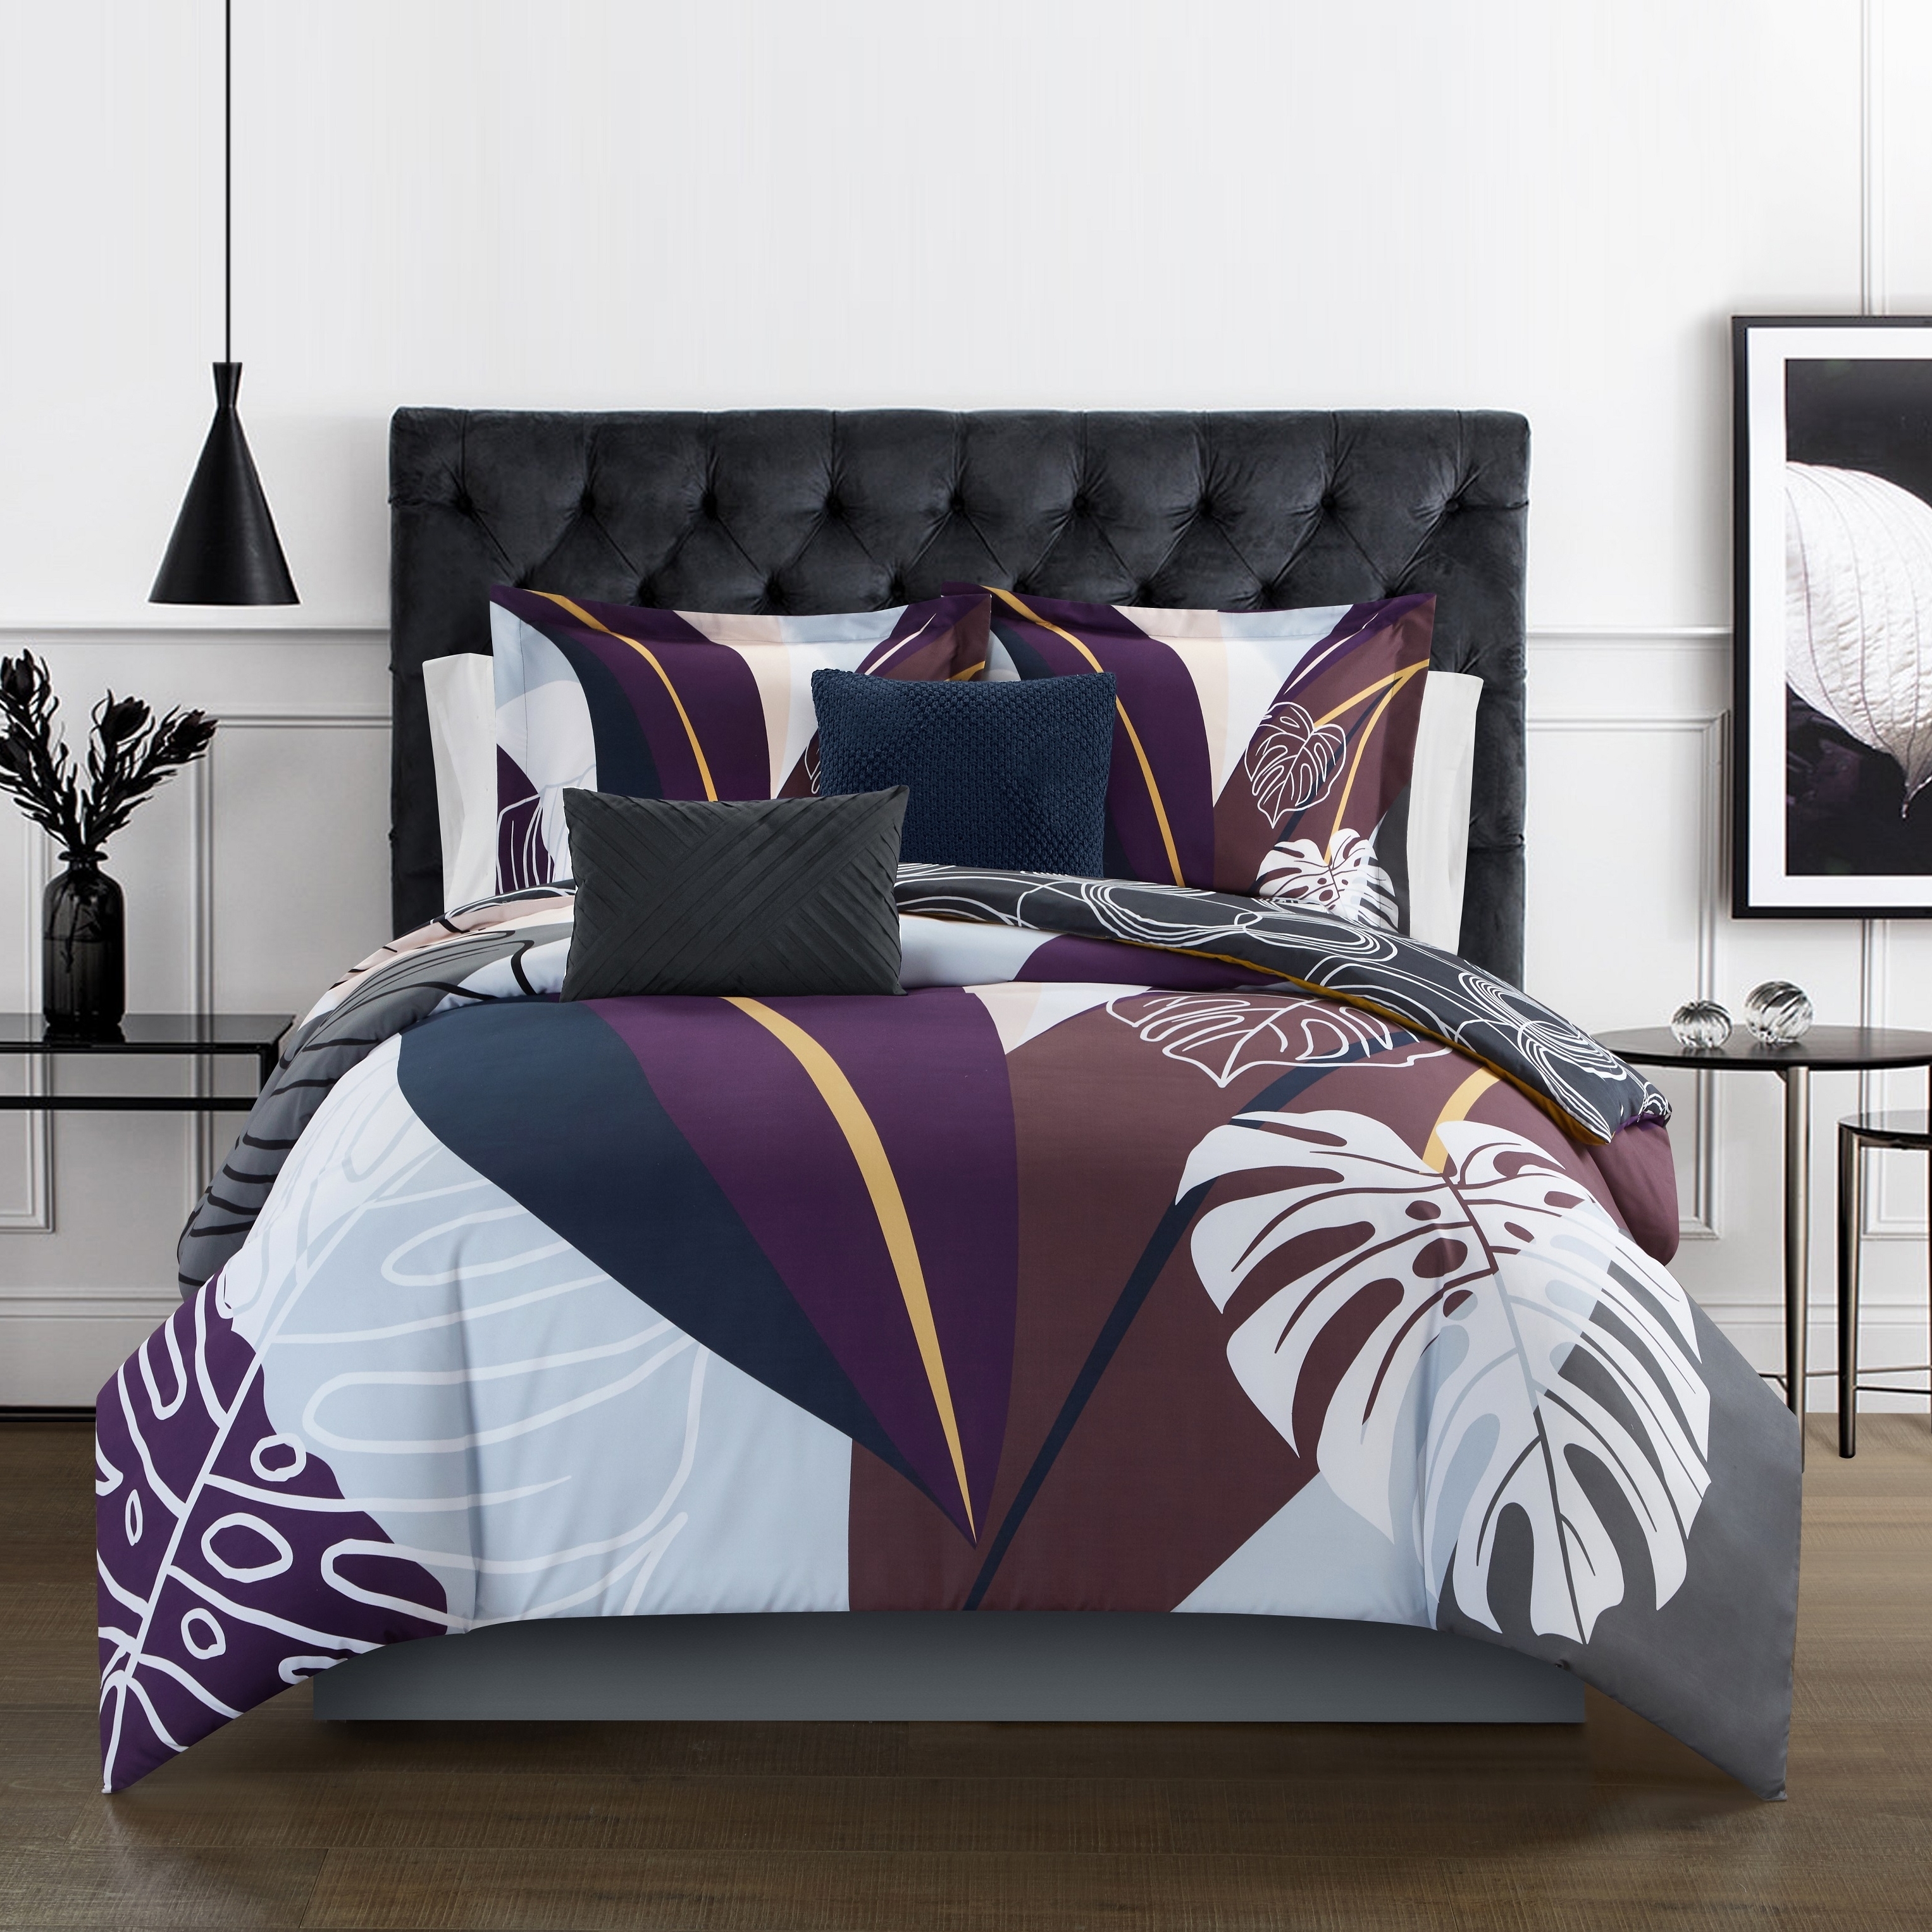 Emeraude 3 Piece Reversible Quilt Set Floral Print Cursive Script Design Bedding - Purple, Queen